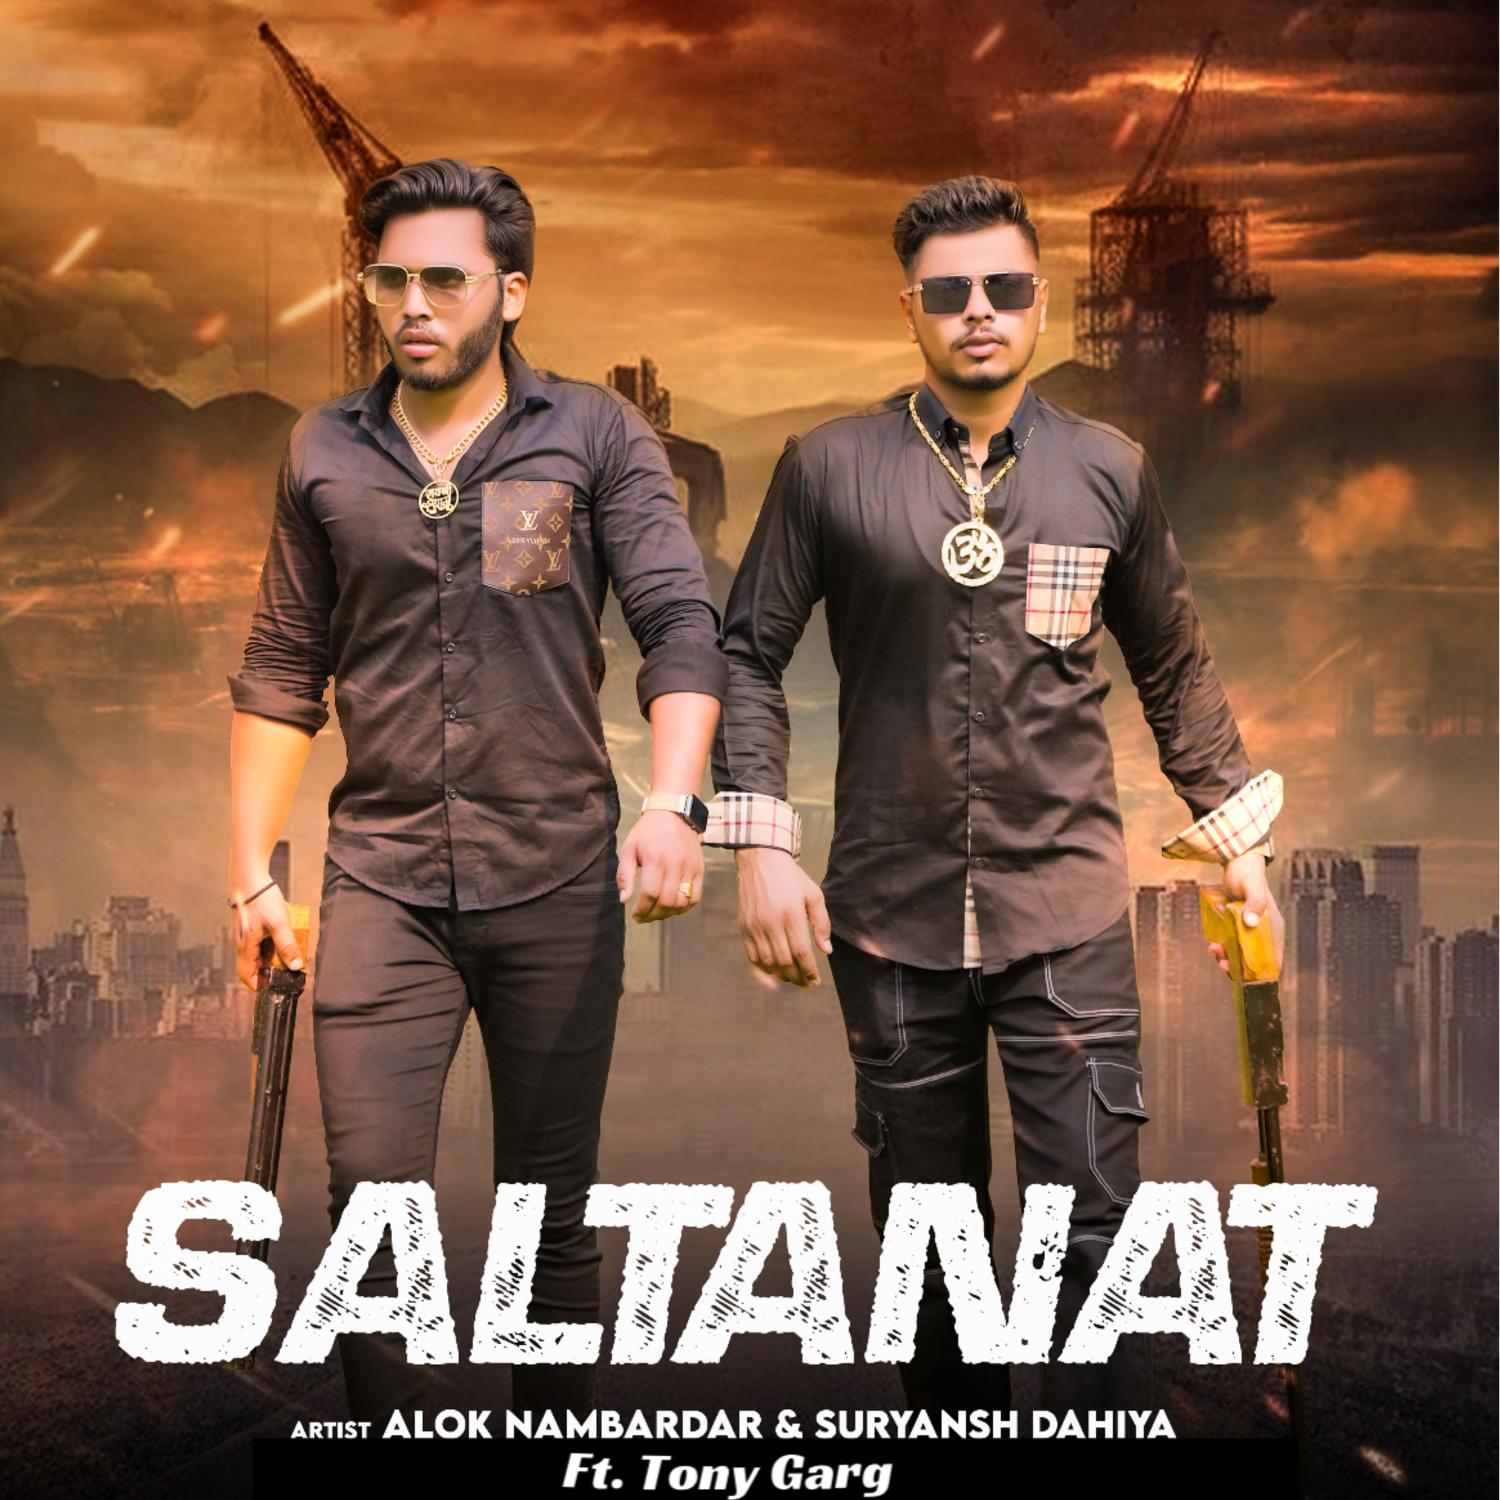 Постер альбома Saltanat